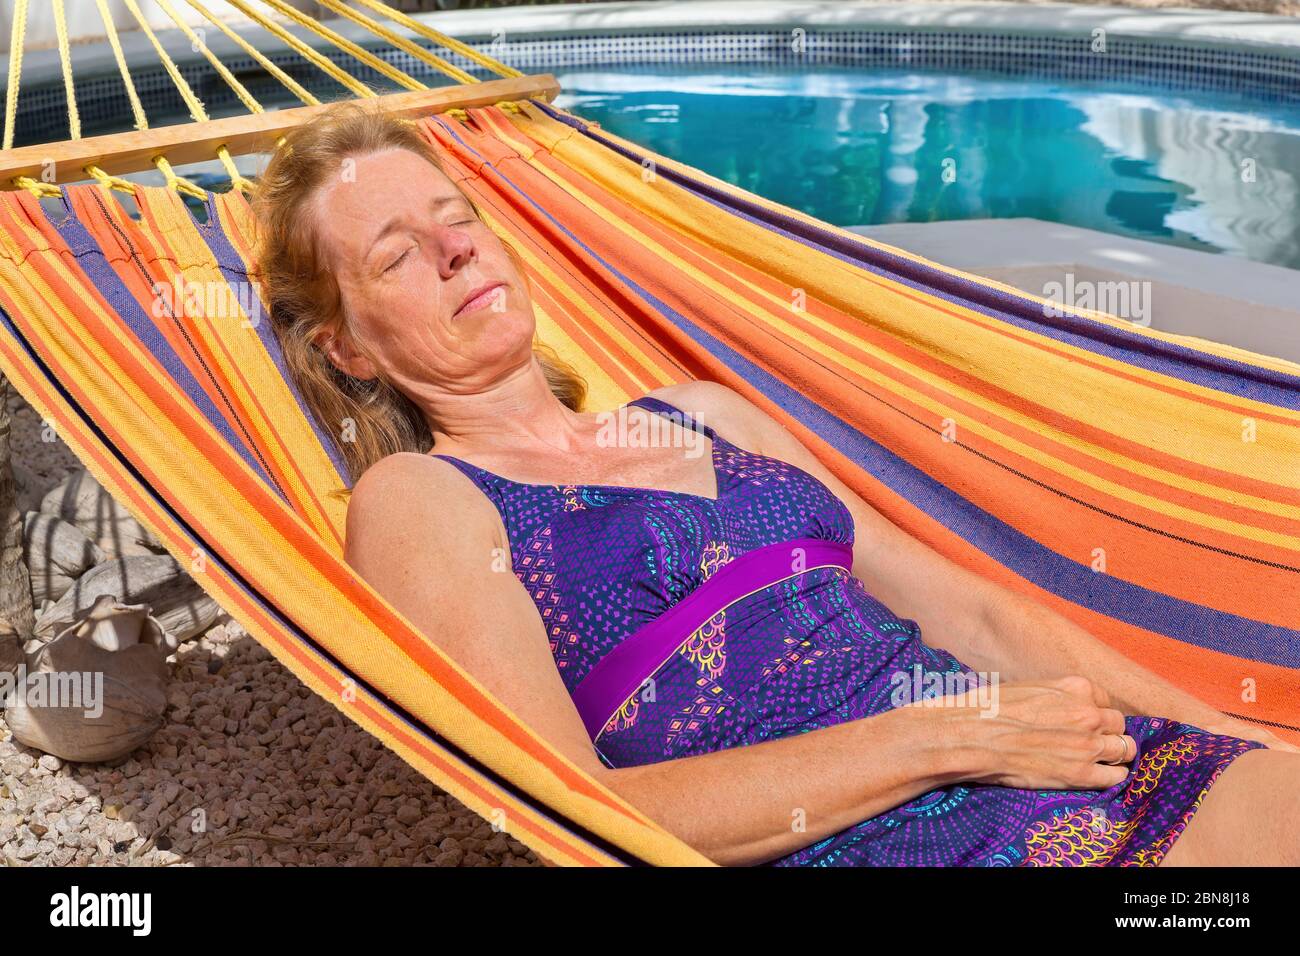 Mujer holandesa de mediana edad, tumbada en una colorida hamaca cerca de la piscina Foto de stock